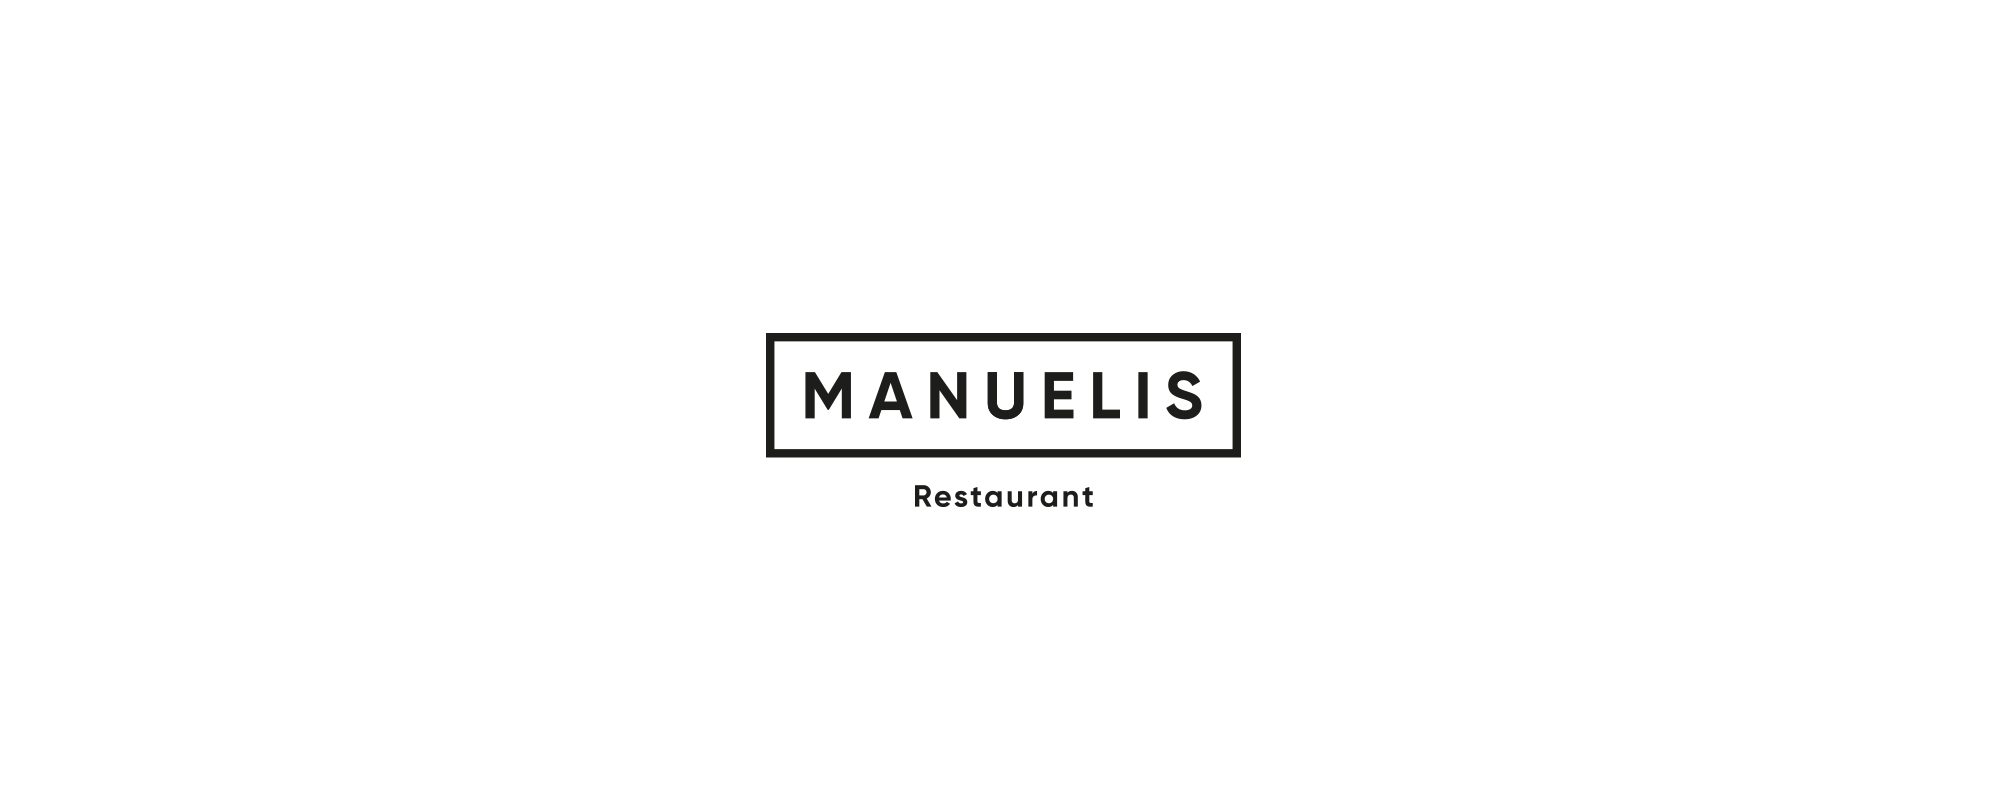 manuelis_logo_animation_05